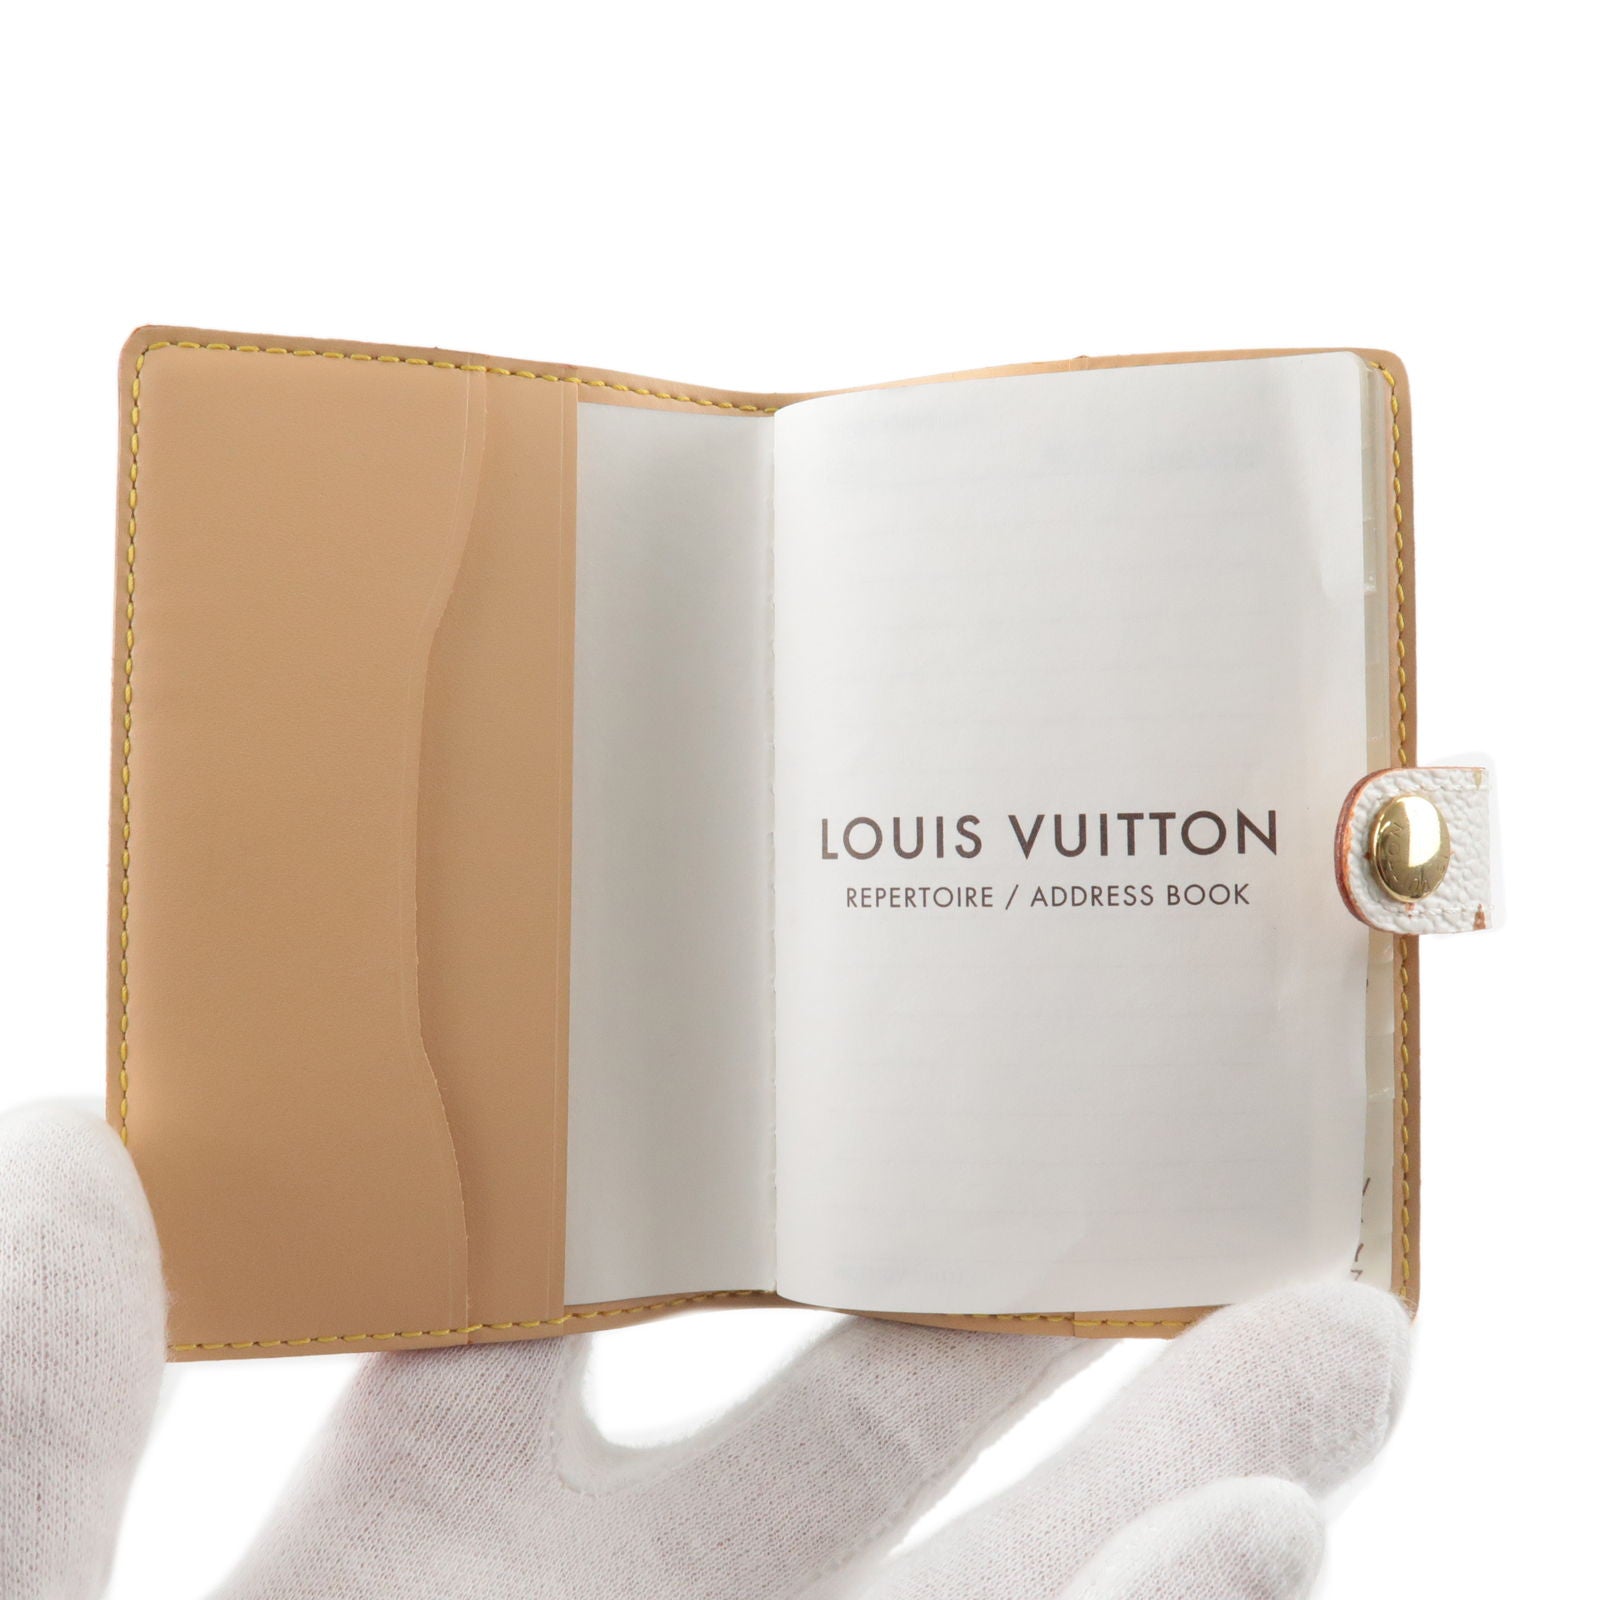 Louis Vuitton Monogram Notebook Cover Mini Agenda